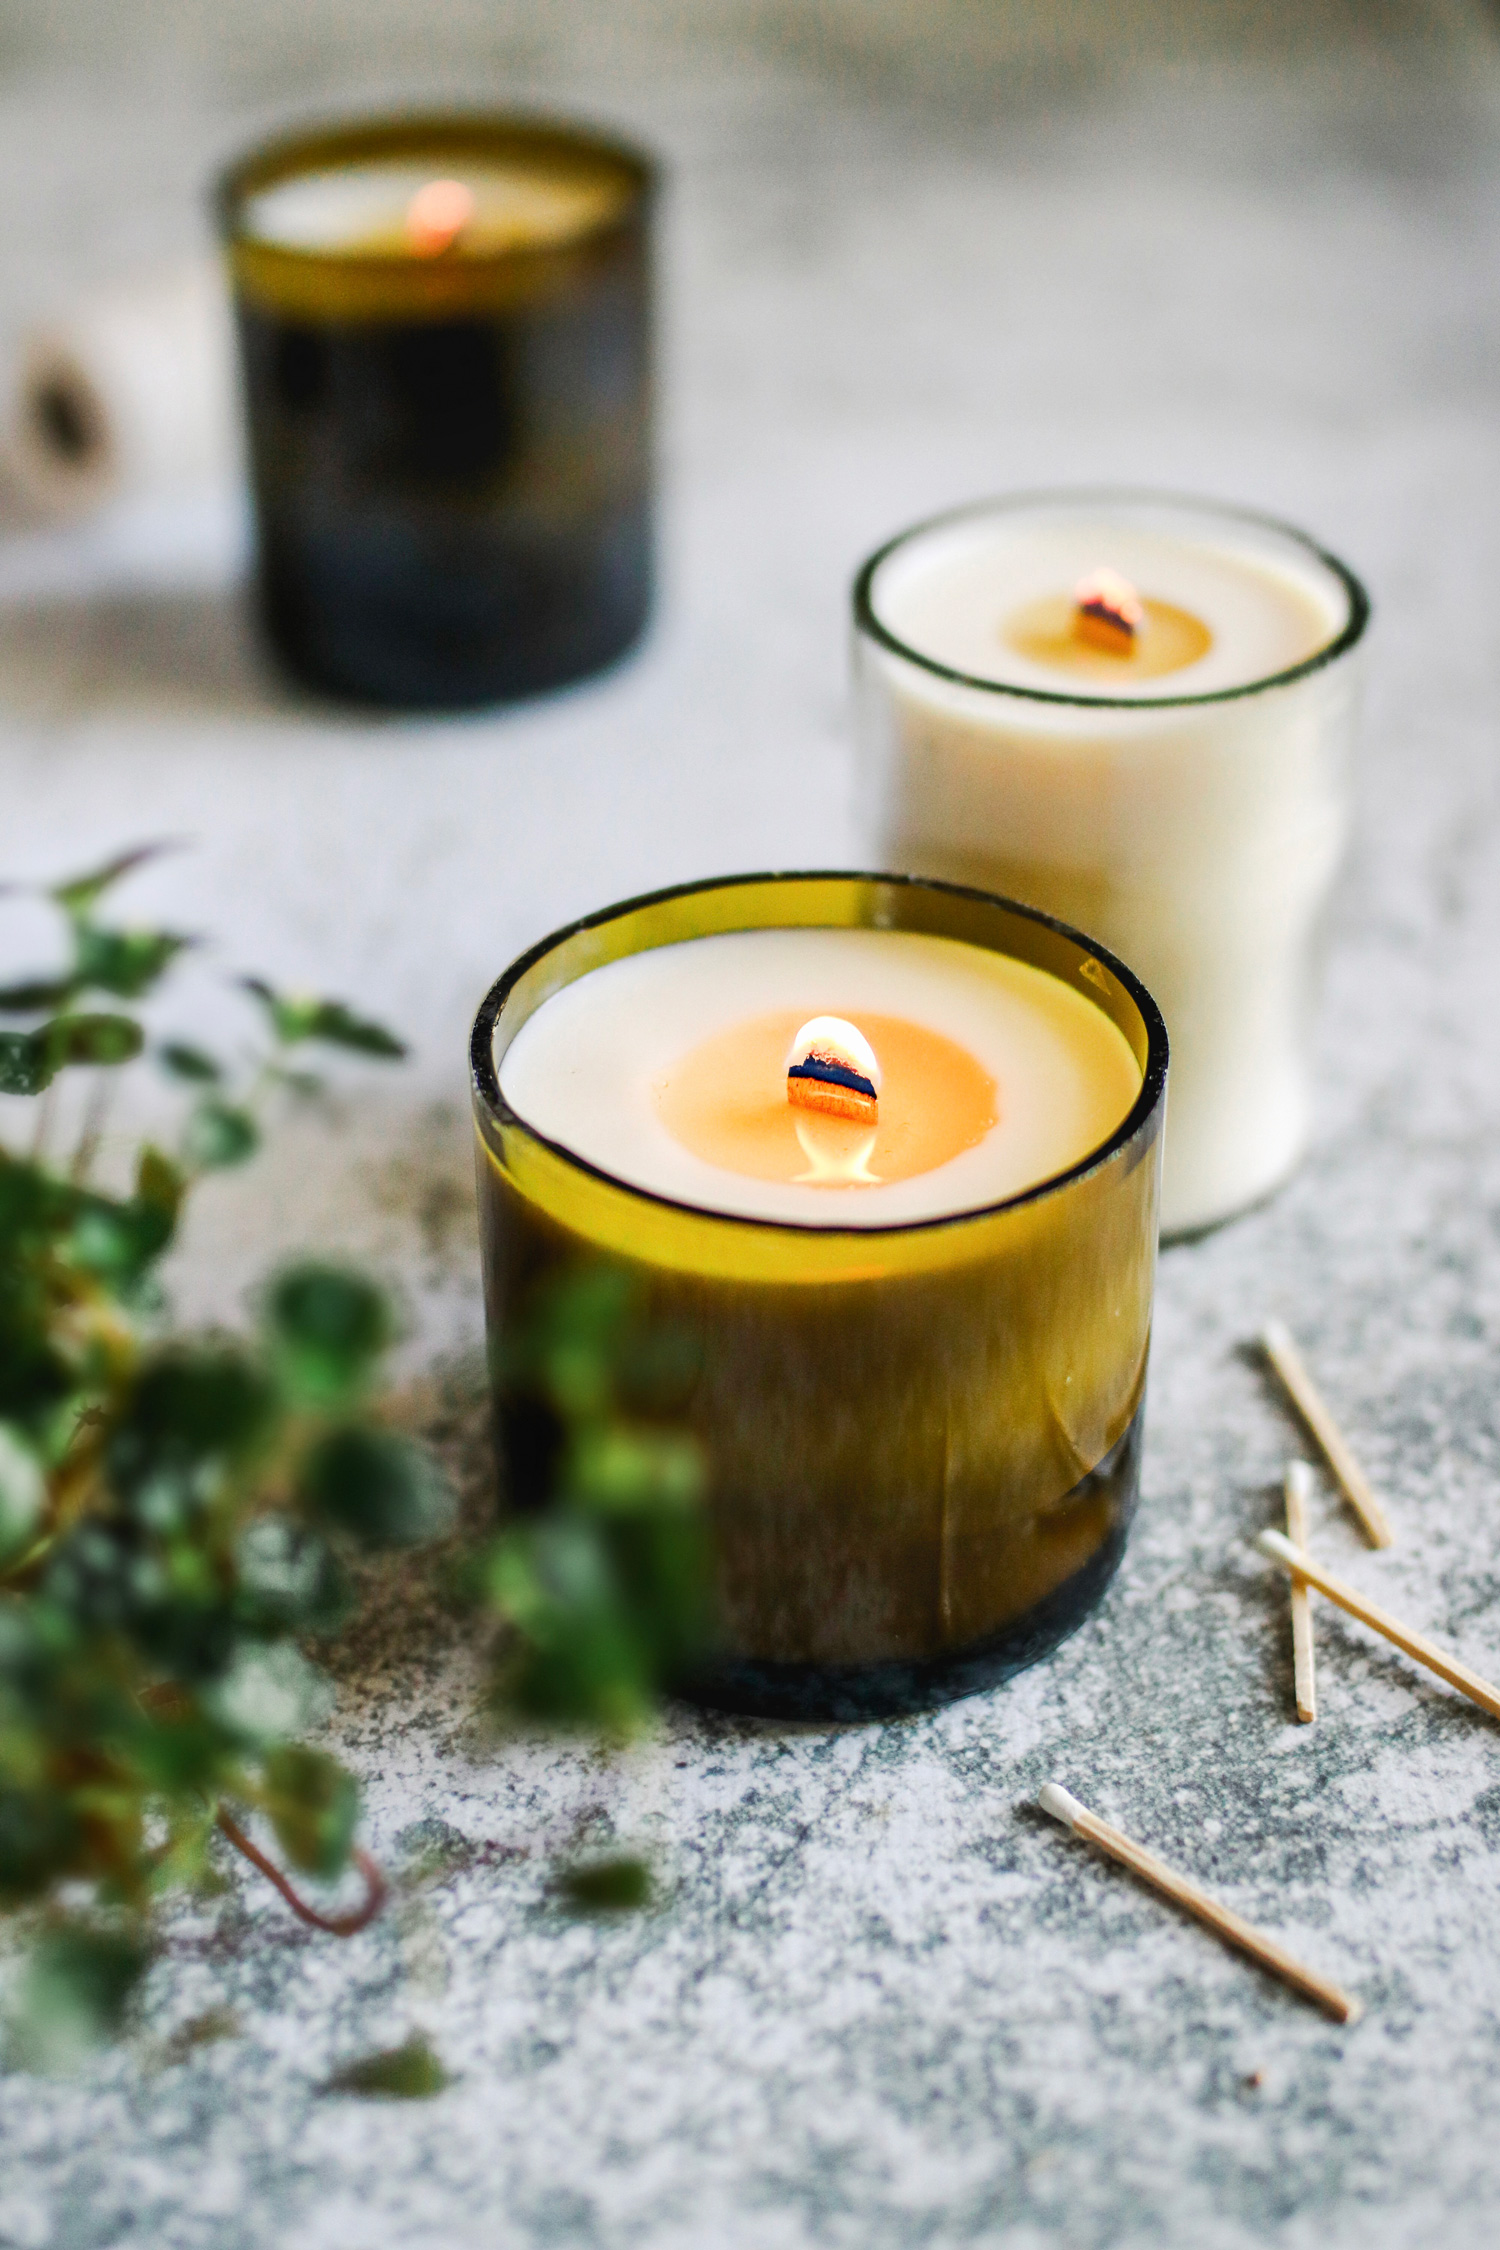 Unique Candles - 10 candles